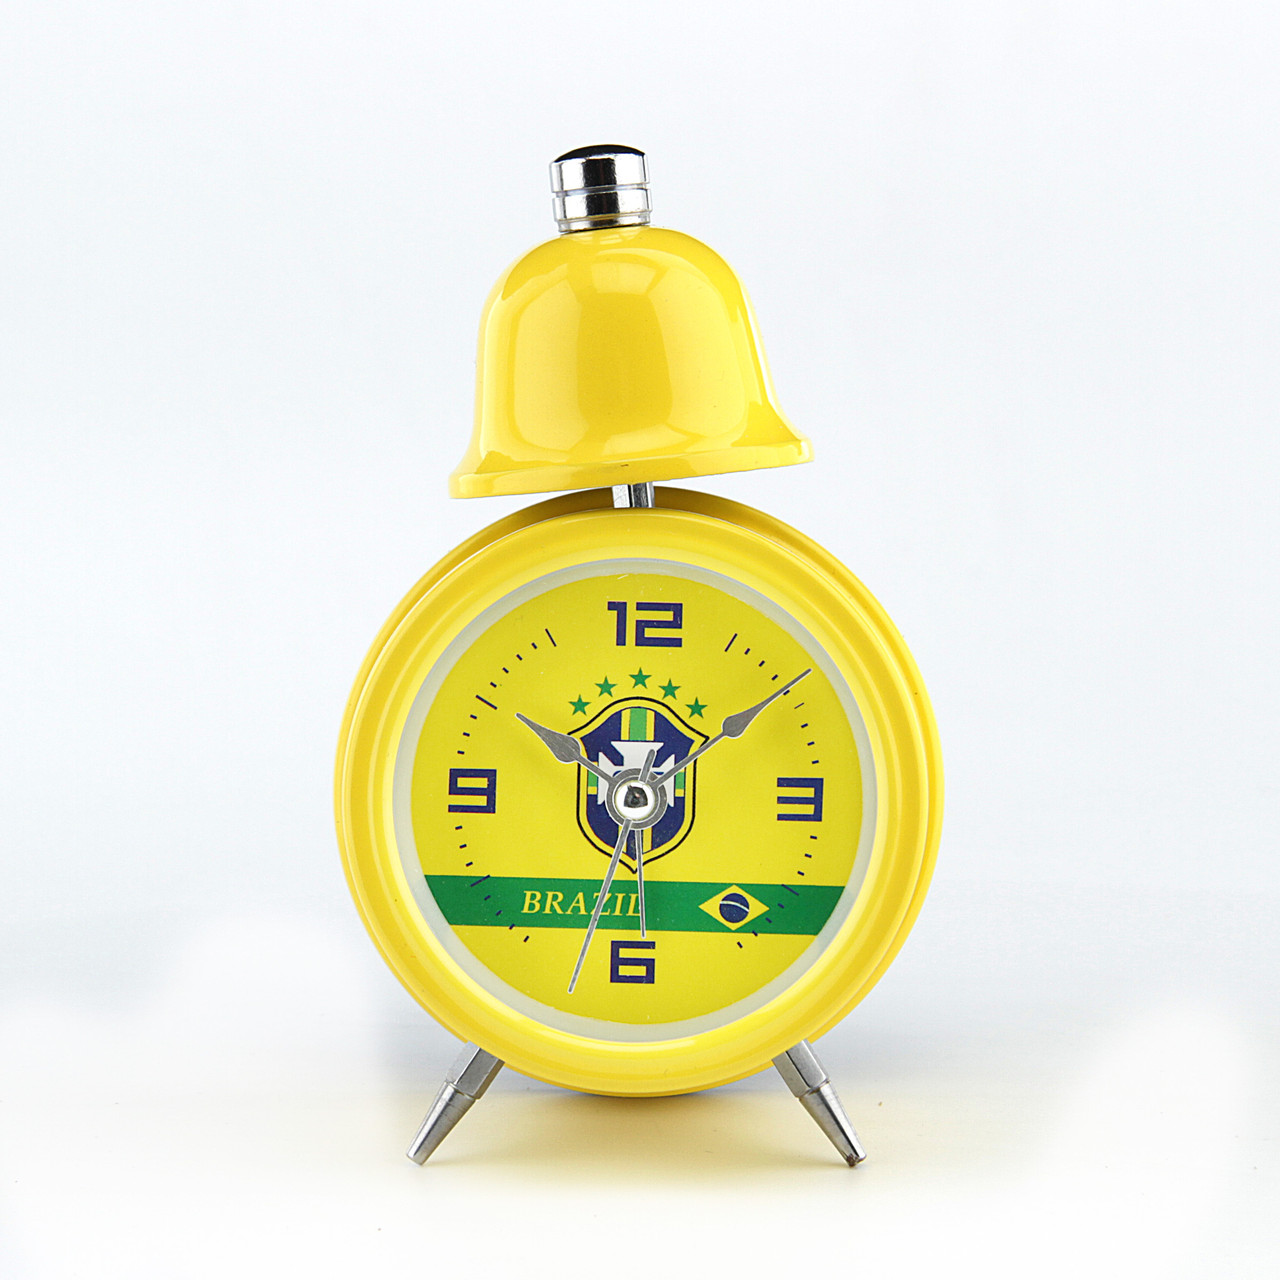 Годинник - Будильник у стилі чемпіонату світу з футболу 2014